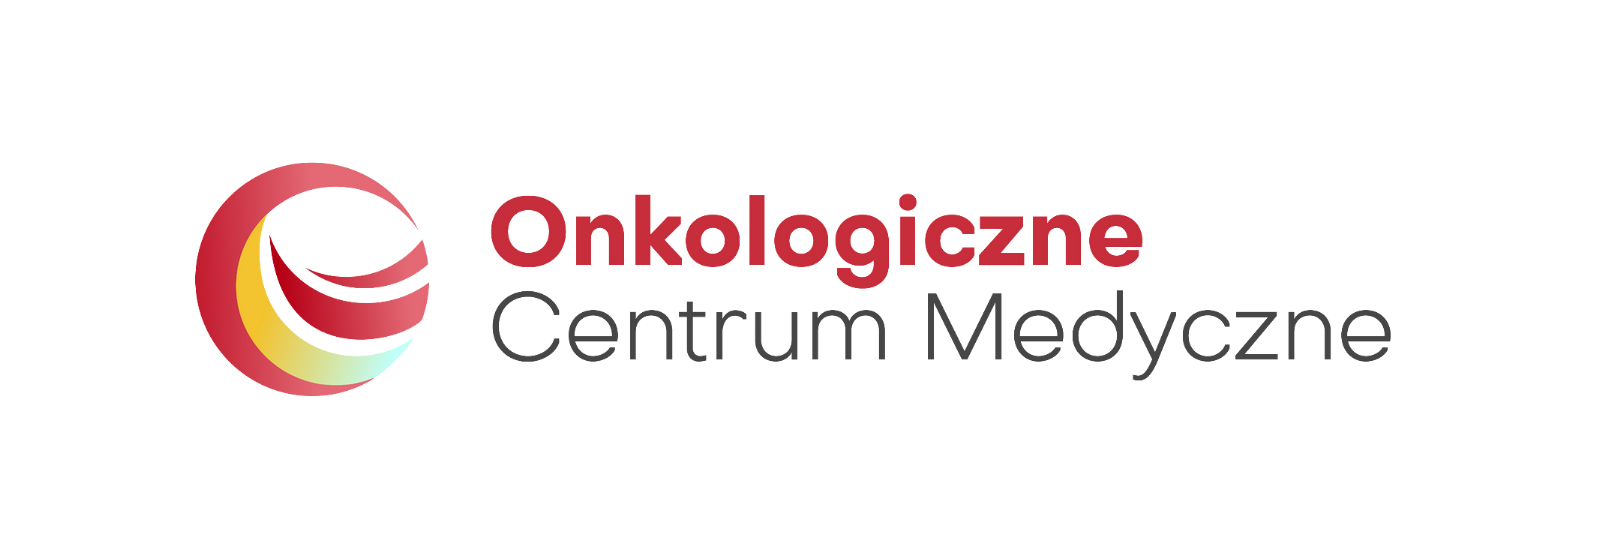 Onkodietetyka otworzyła Onkologiczne Centrum Medyczne w Bydgoszczy